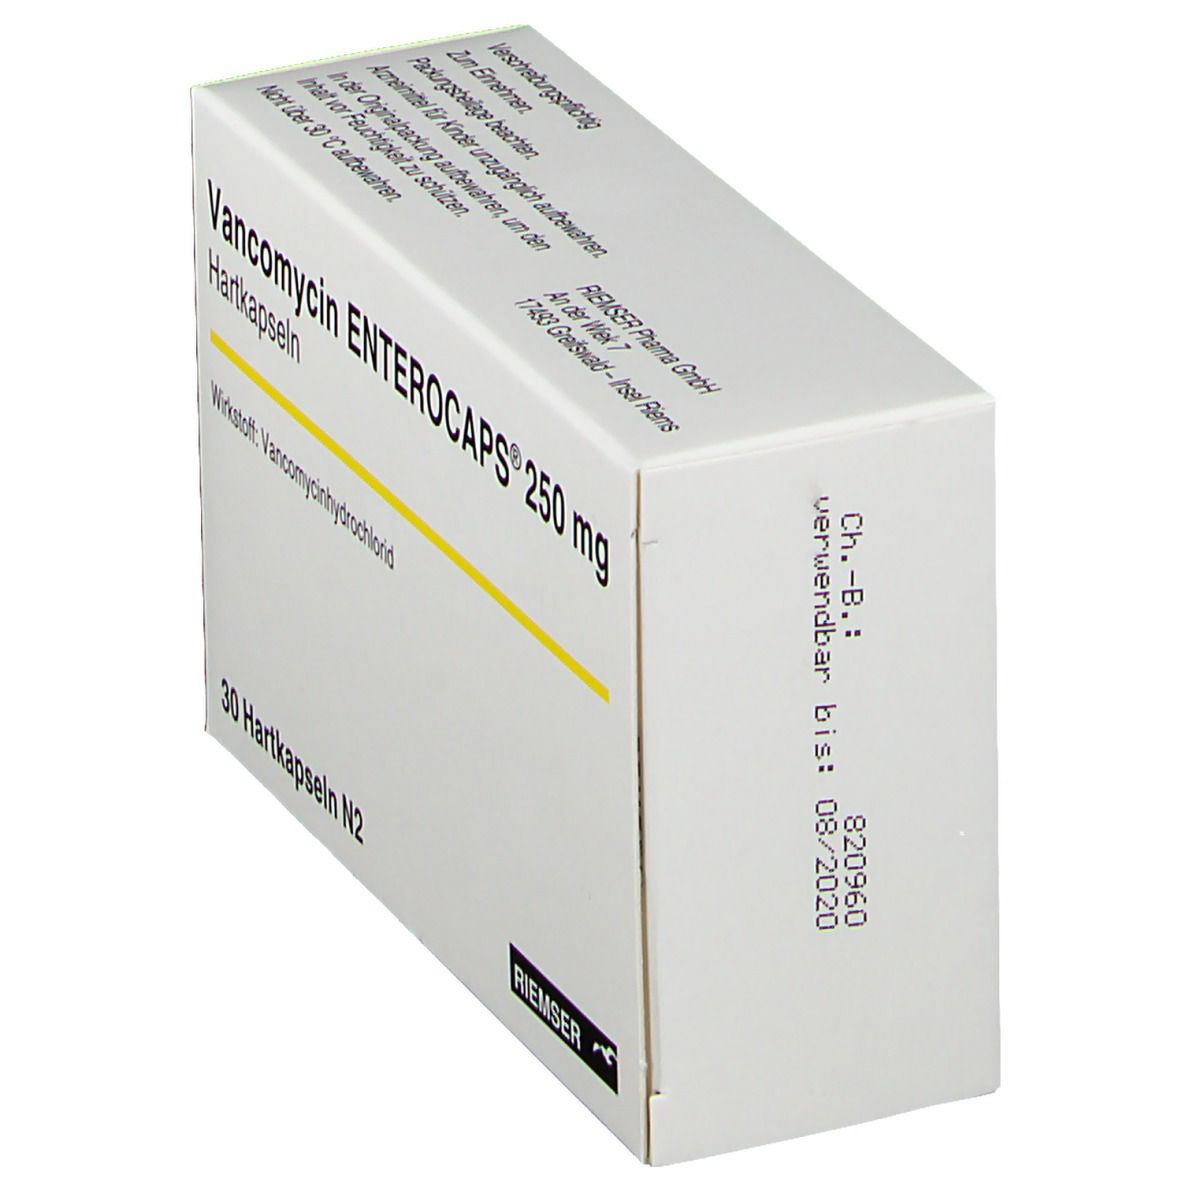 Vancomycin ENTEROCAPS® 250 mg